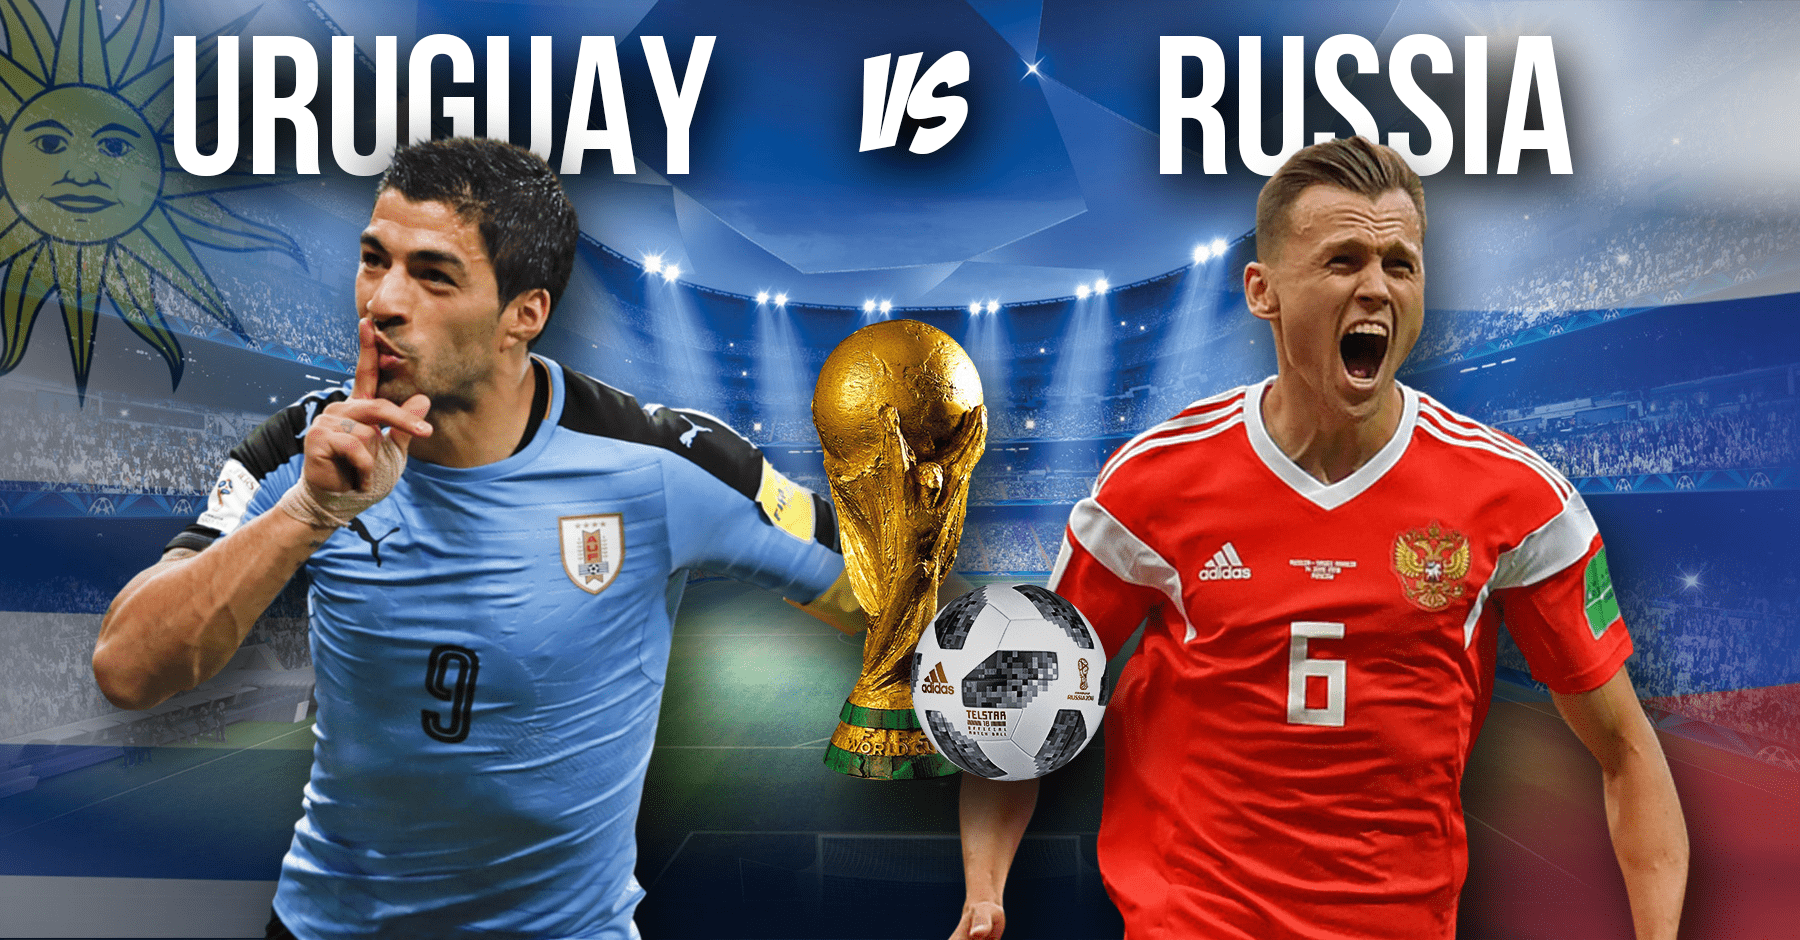 Uruguay vs Russia